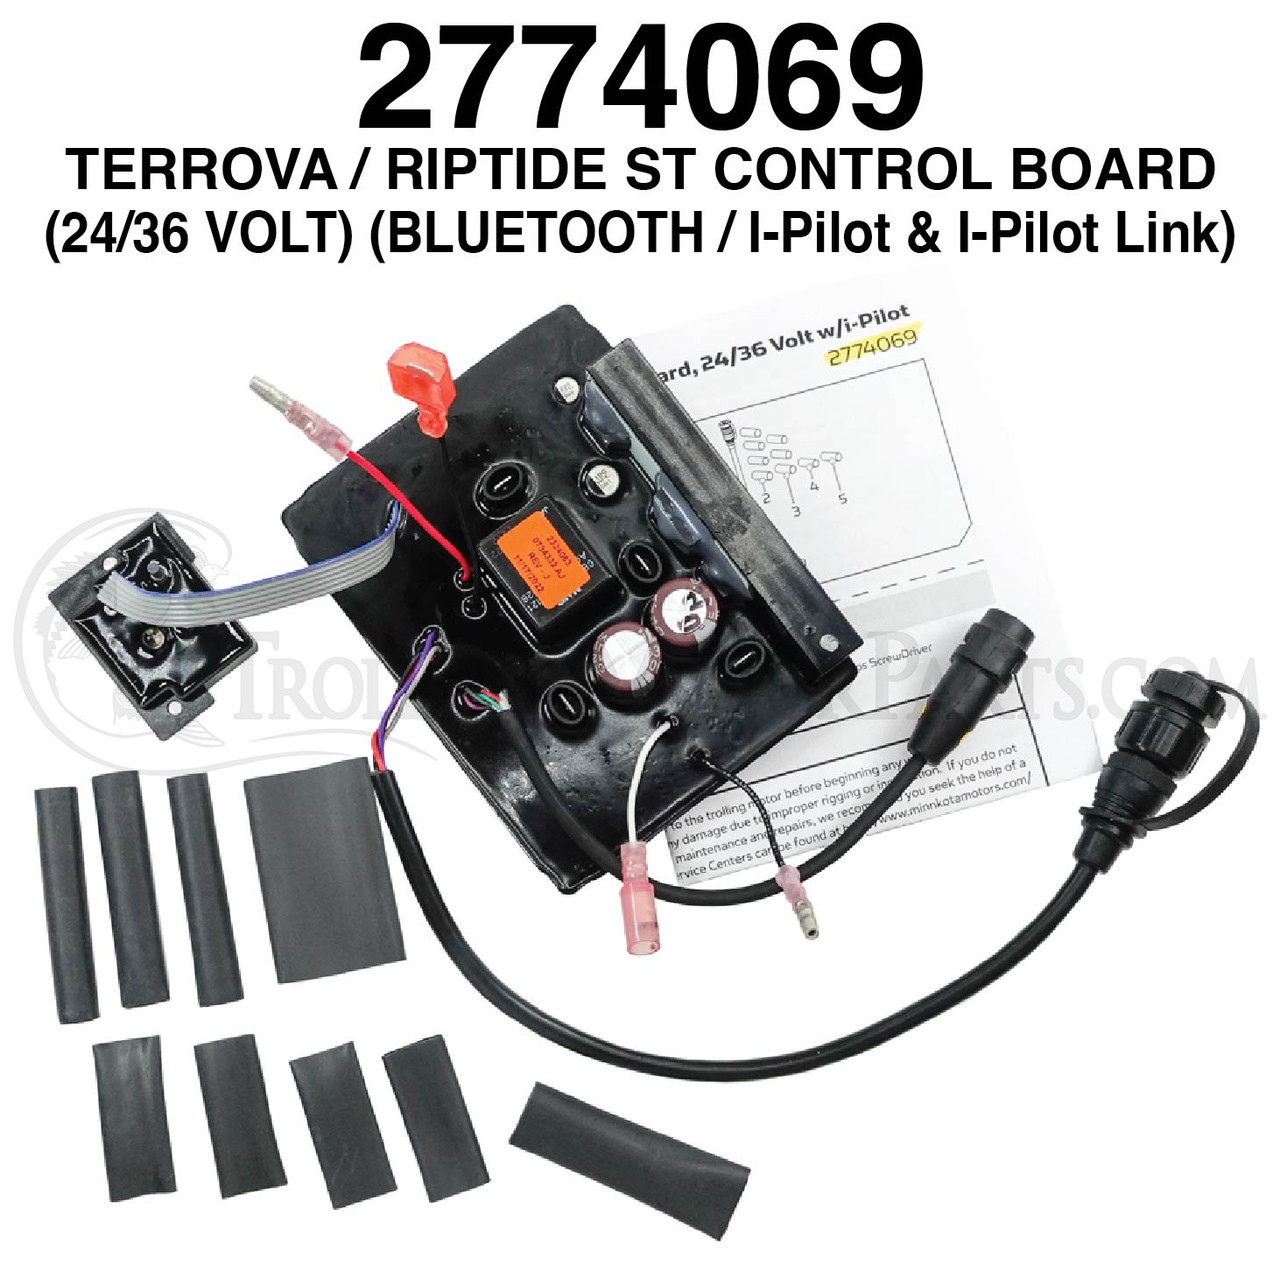 Minn Kota Terrova Control Board (24/36 Volt) (Bluetooth) (I-Pilot